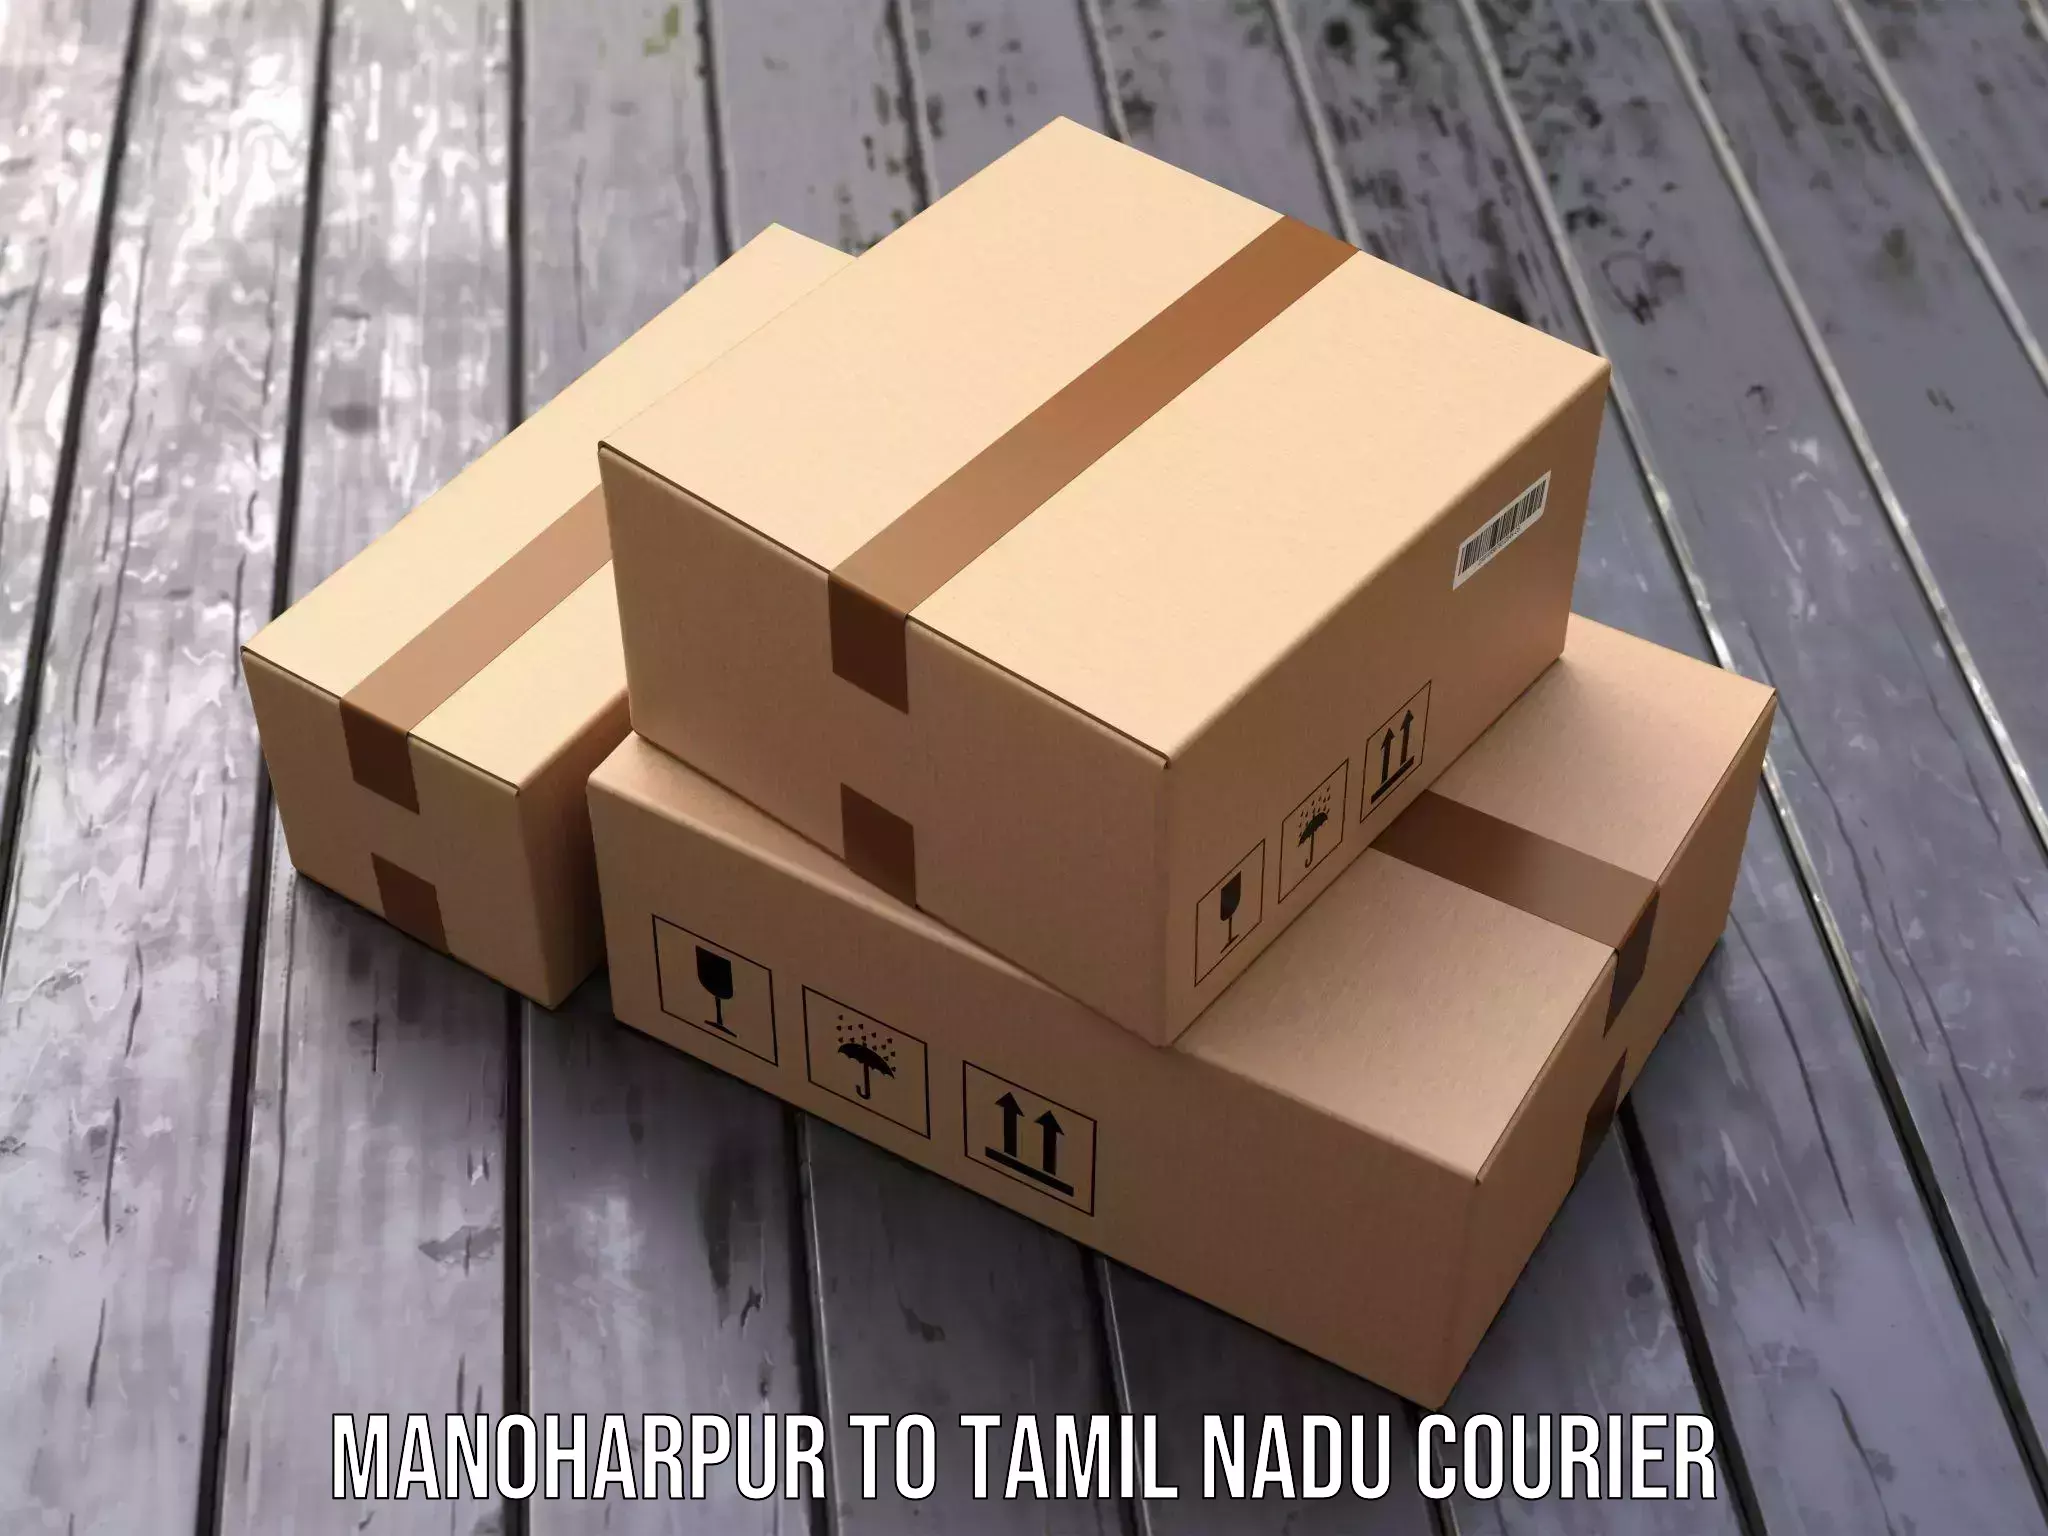 Reliable logistics providers Manoharpur to Sankarapuram